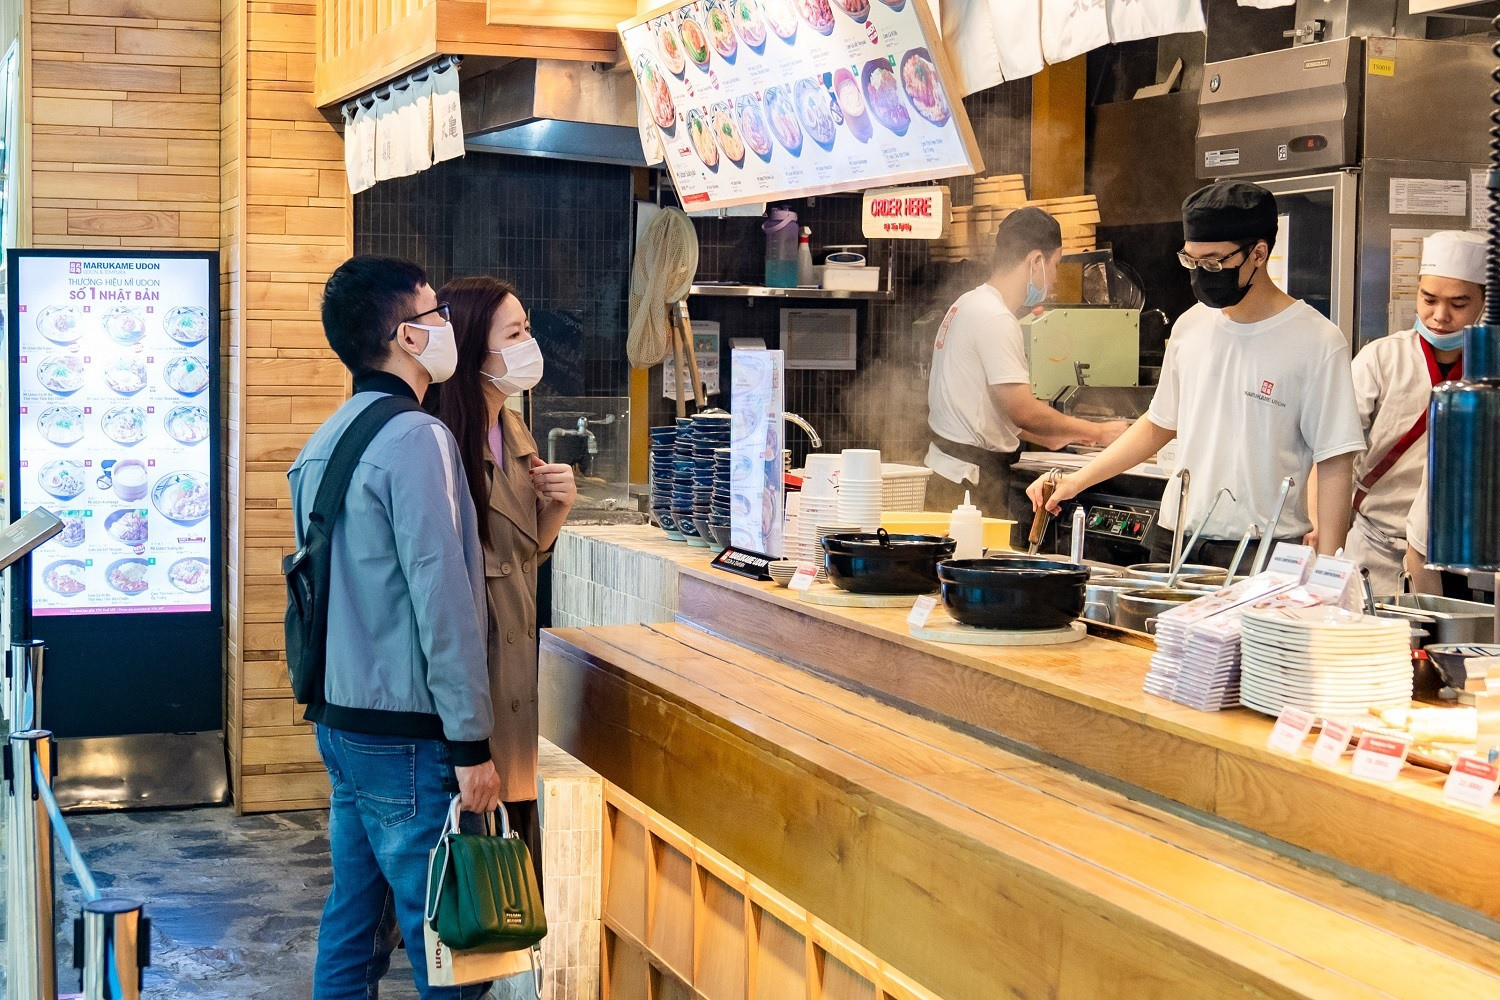 Marukame Udon được mong chờ khi thực khách được chọn vị ramen và món phụ ngay tại quầy; tất cả khách hàng đều xếp hàng giãn cách nghiêm túc theo đúng quy định. Marukame Udon cũng tung ngay các set e-voucher với ưu đãi lên tới 20% trong dịp 20.10